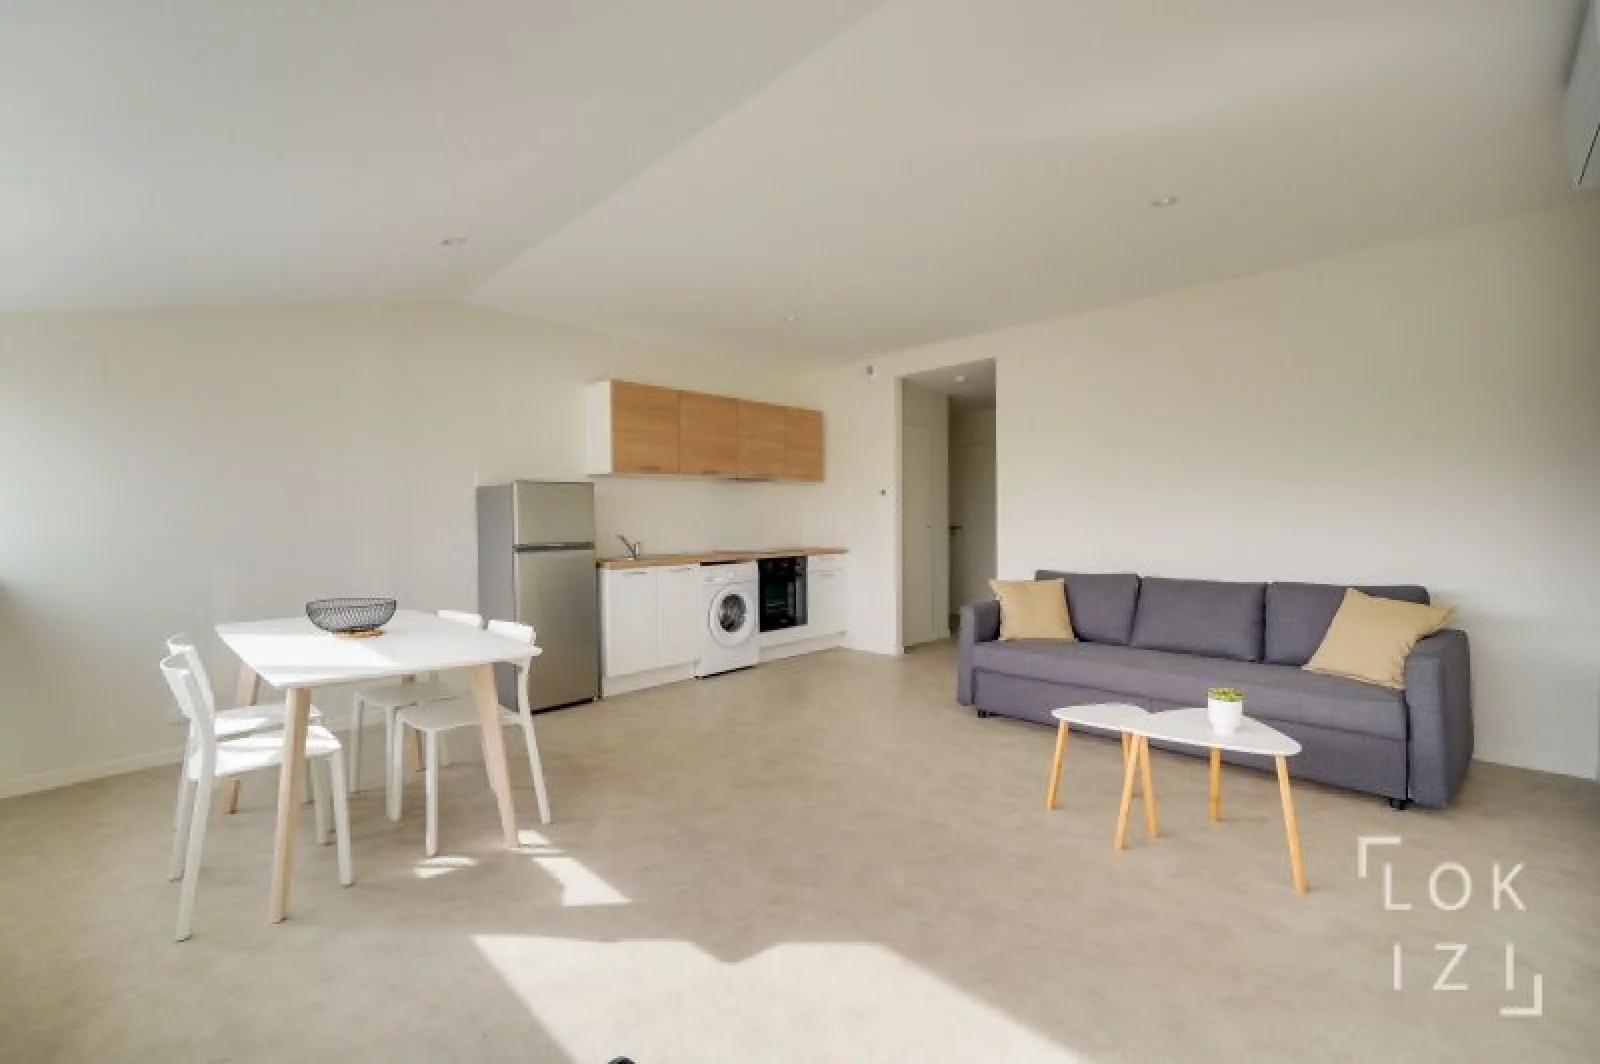 Location appartement meublé 2 pièces 63m² (Bordeaux - St Augustin)